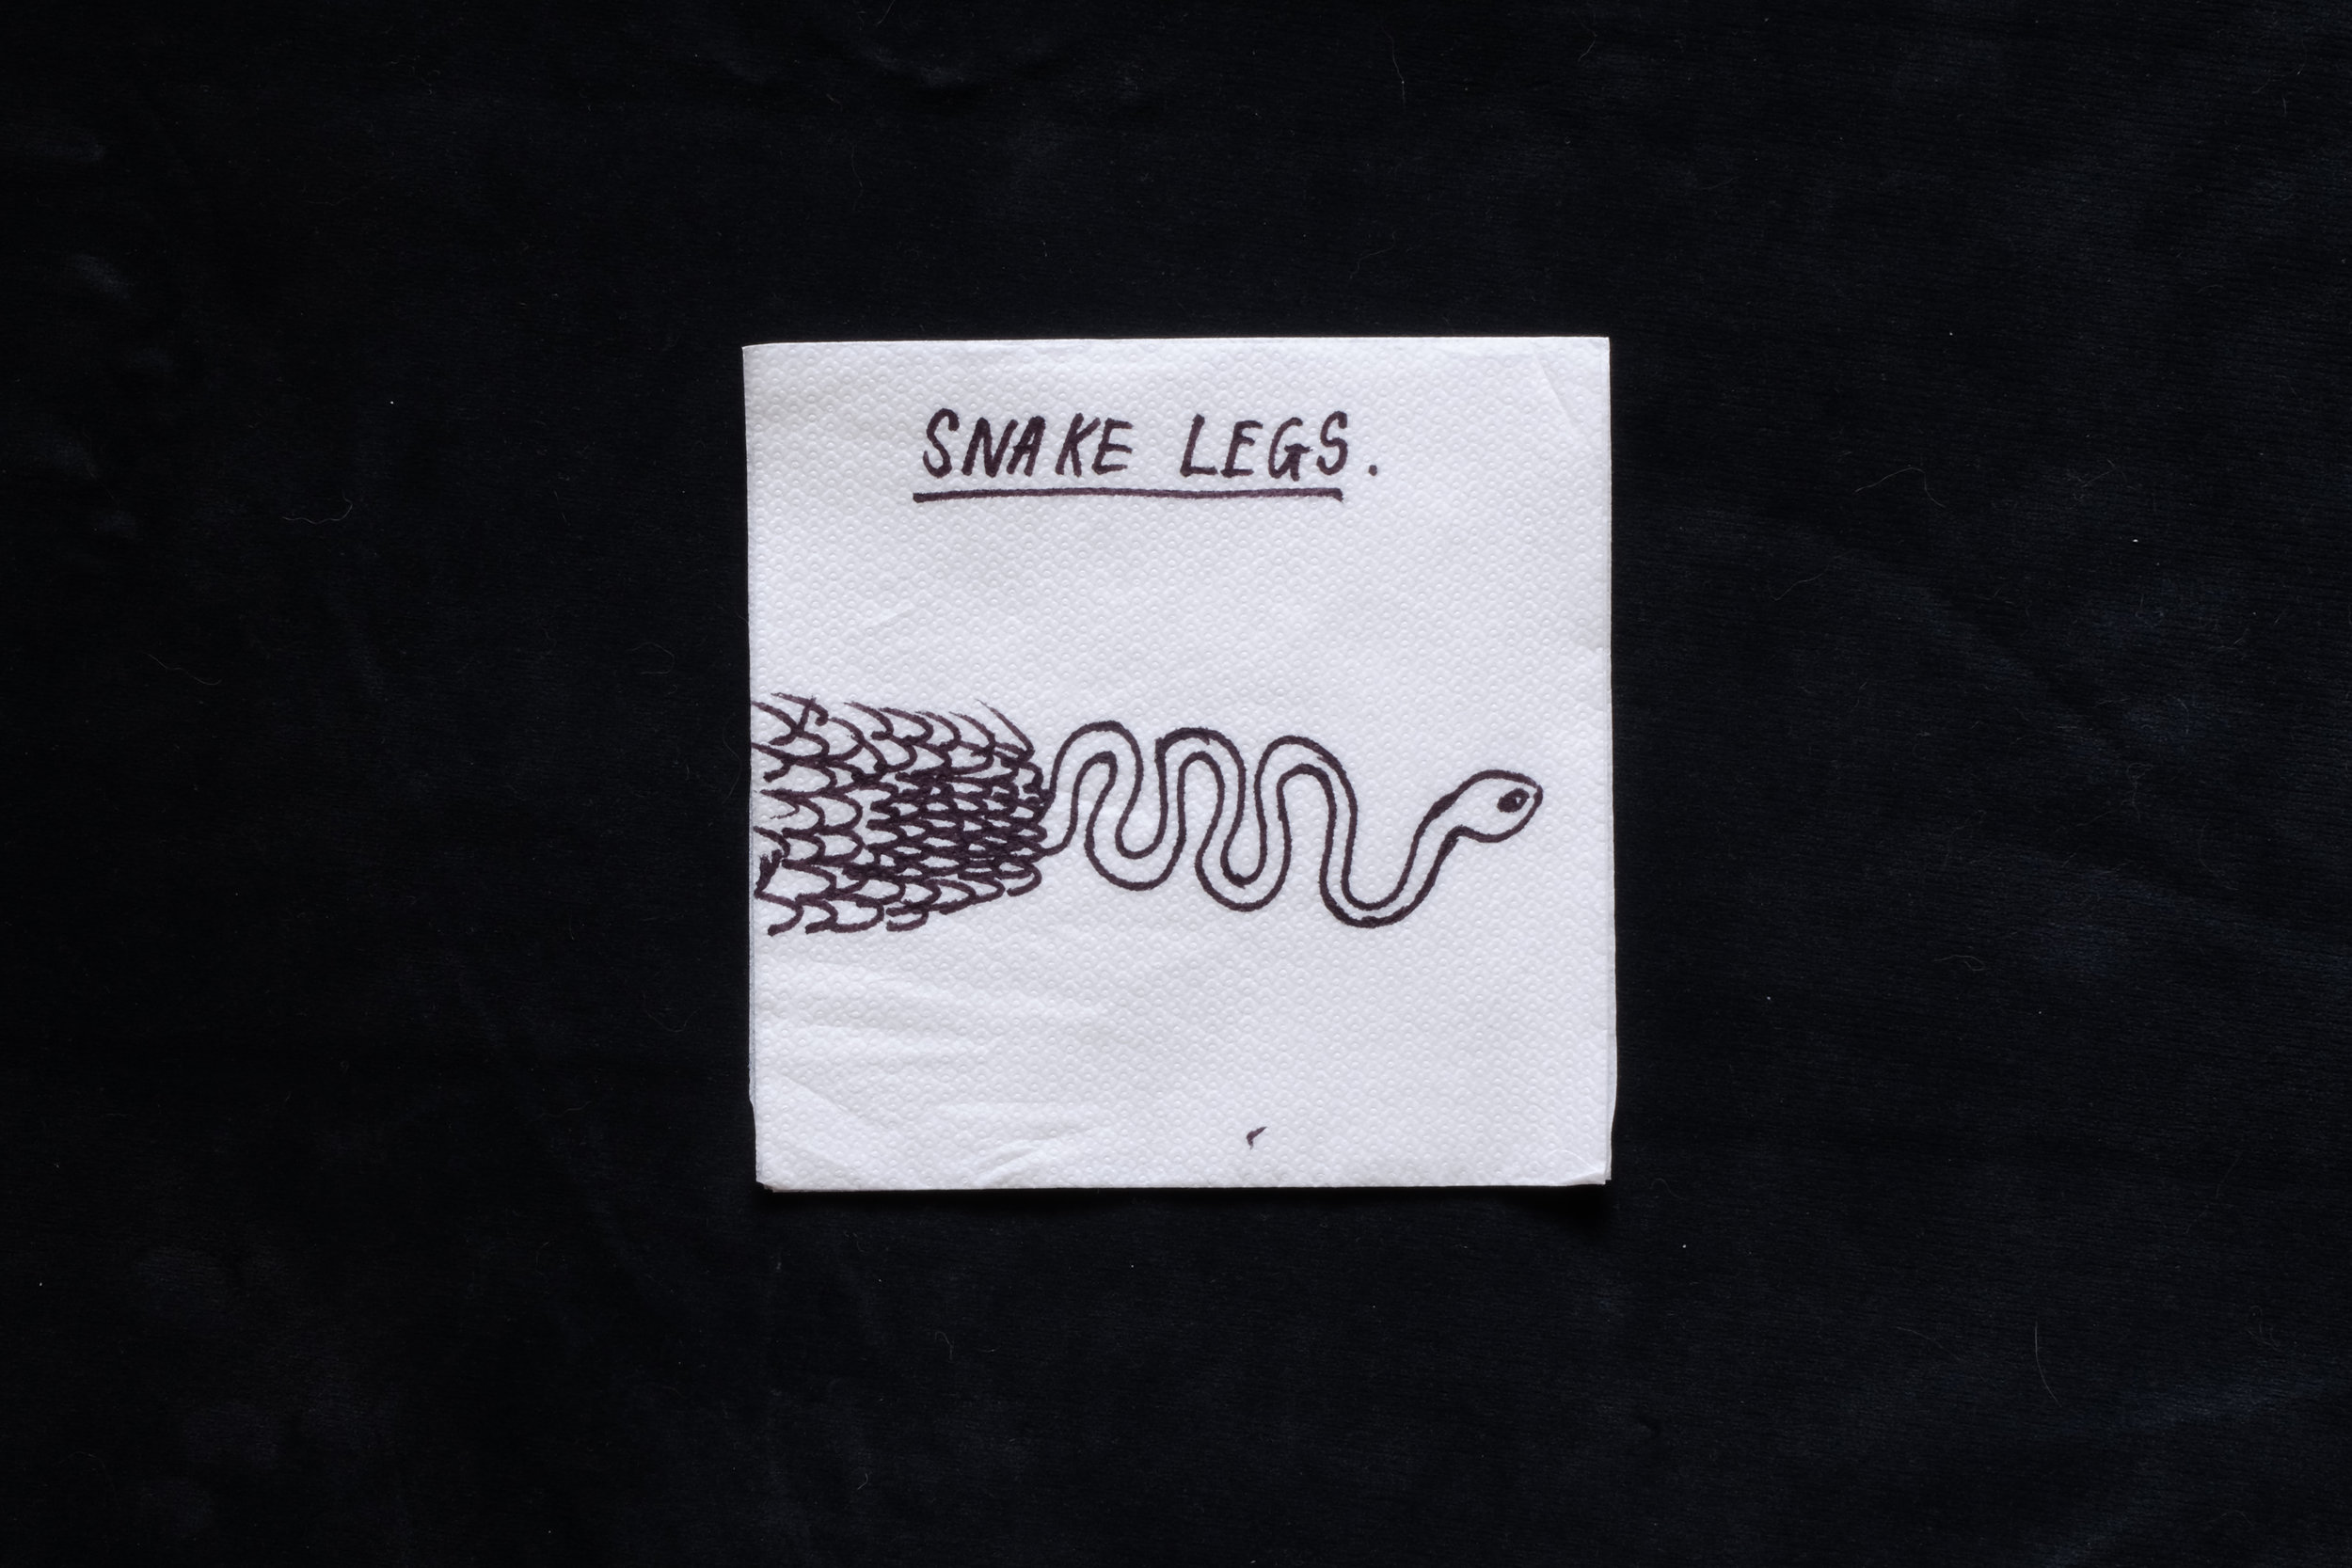 'Snake Legs 2 - the return of the snake legs'